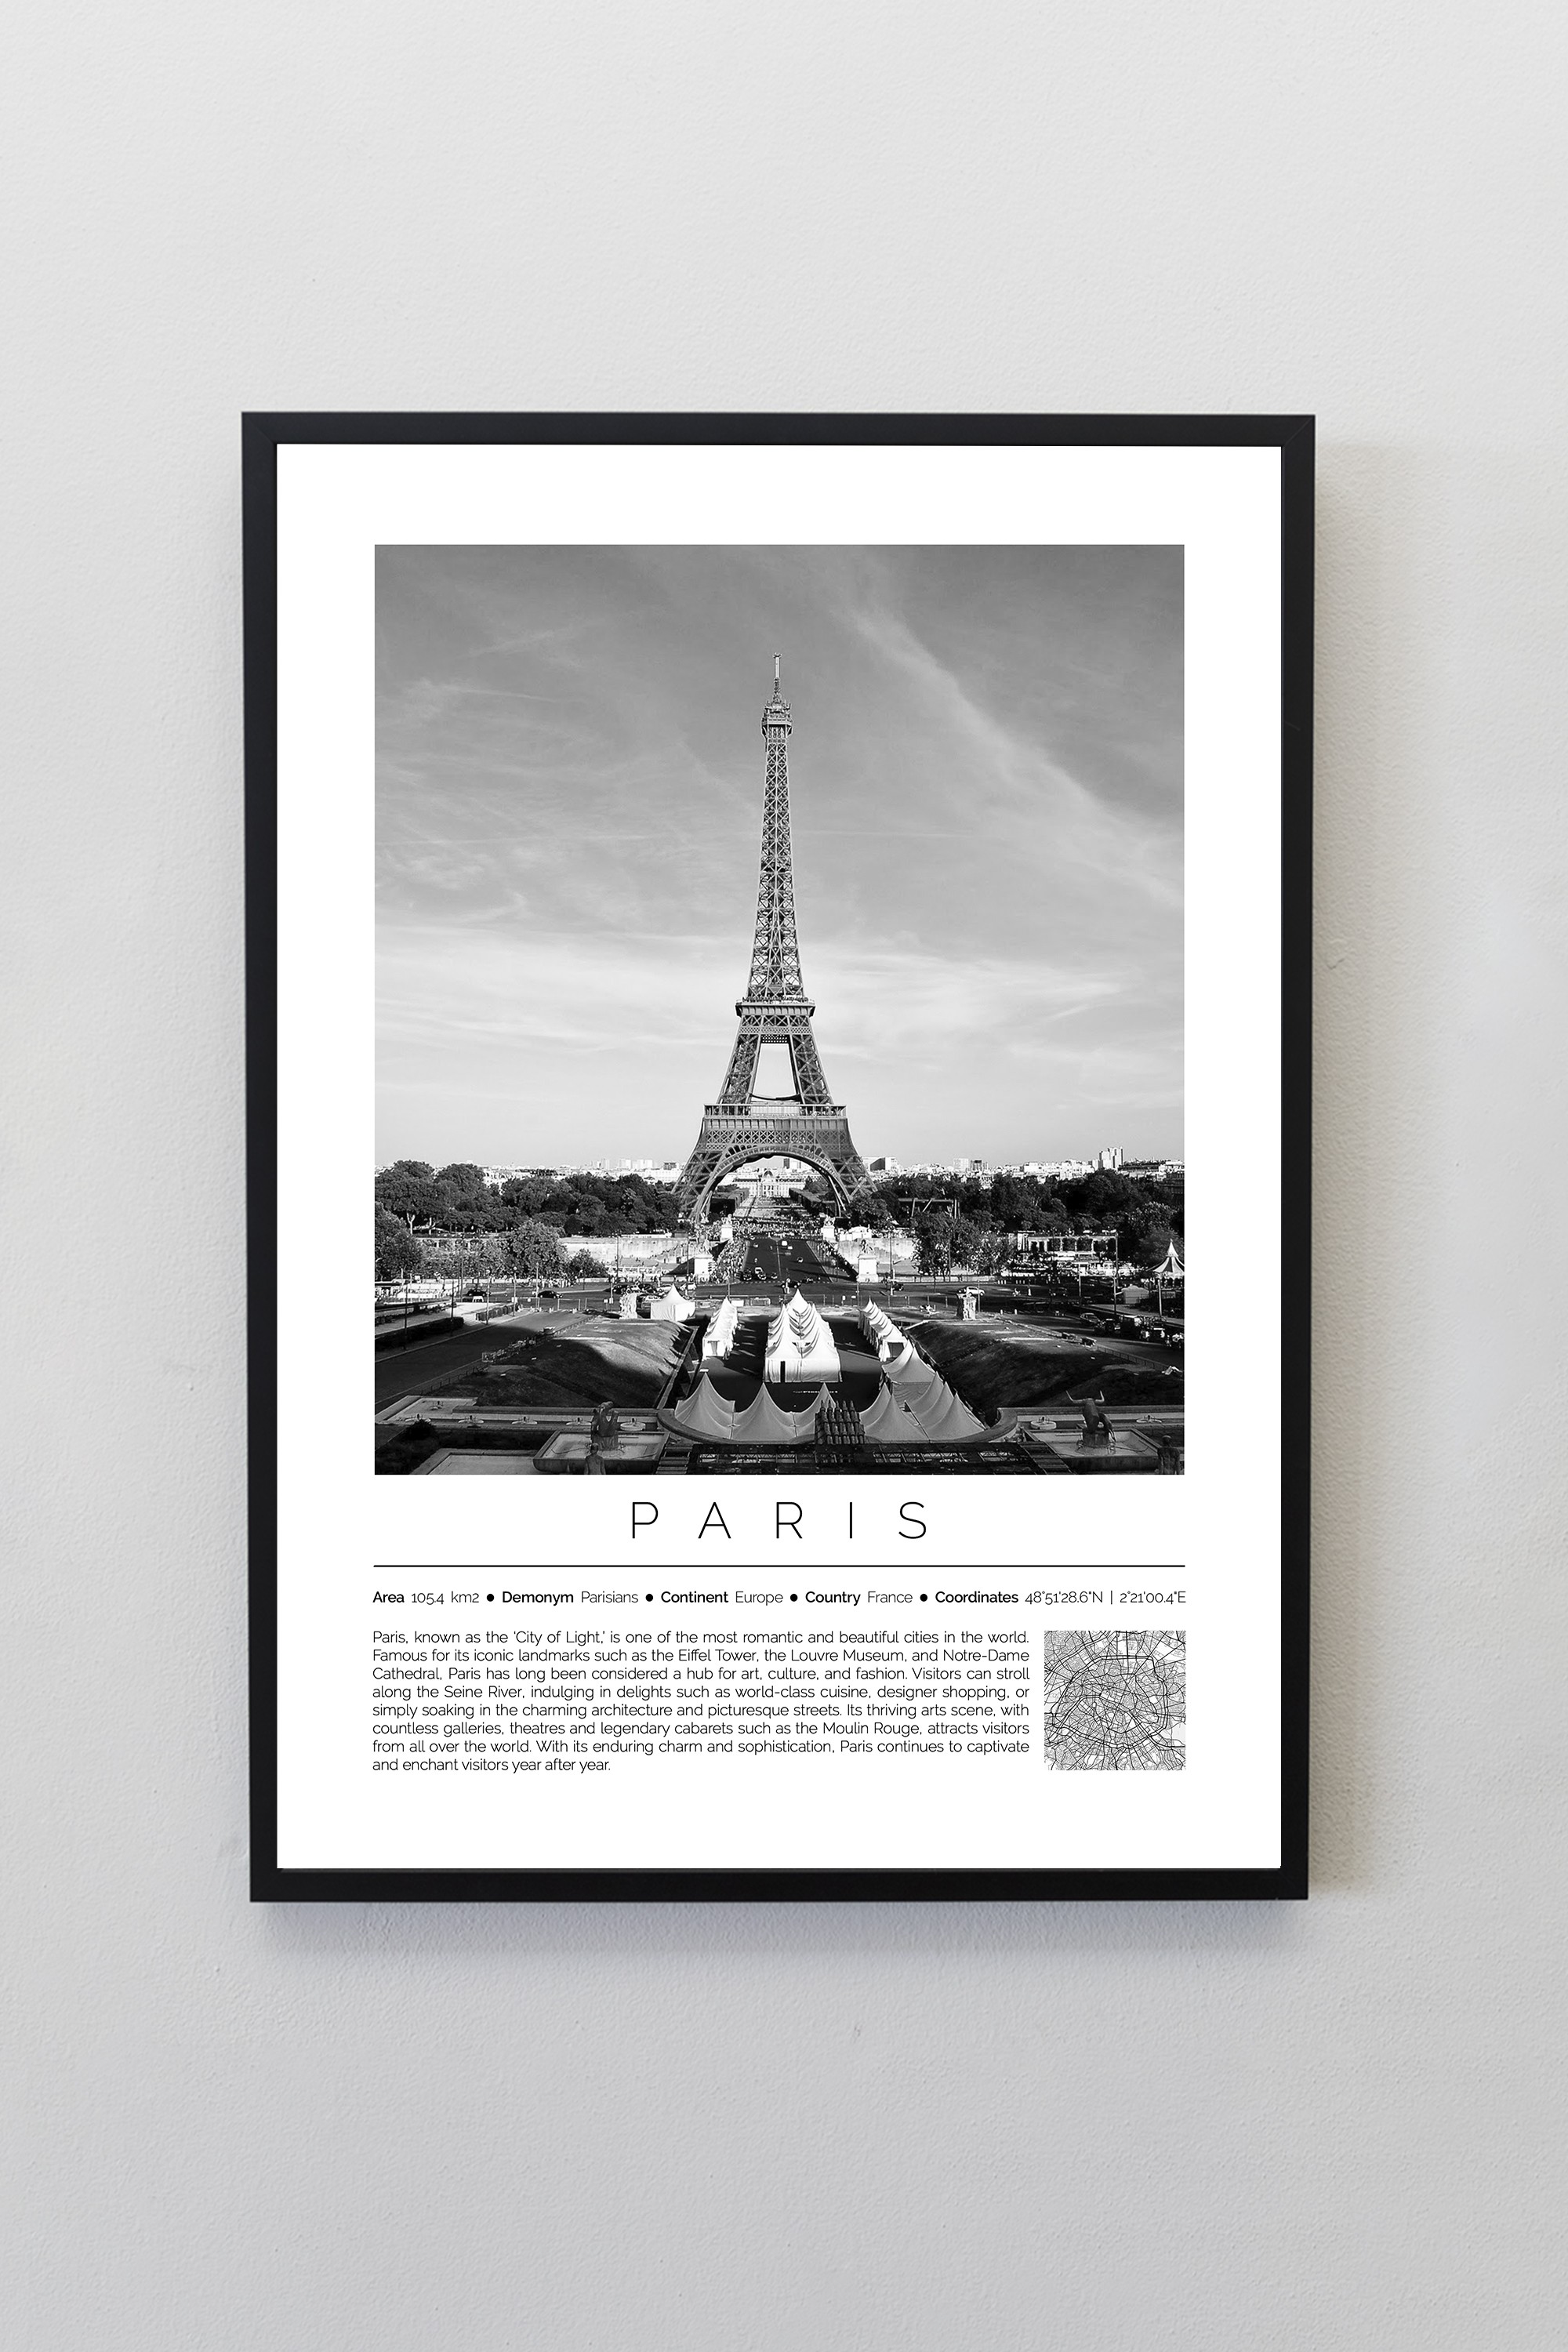 Paris Fransa Dünya Şehirleri Koleksiyonu Çerçeveli Monochrome Tasarım Tablo